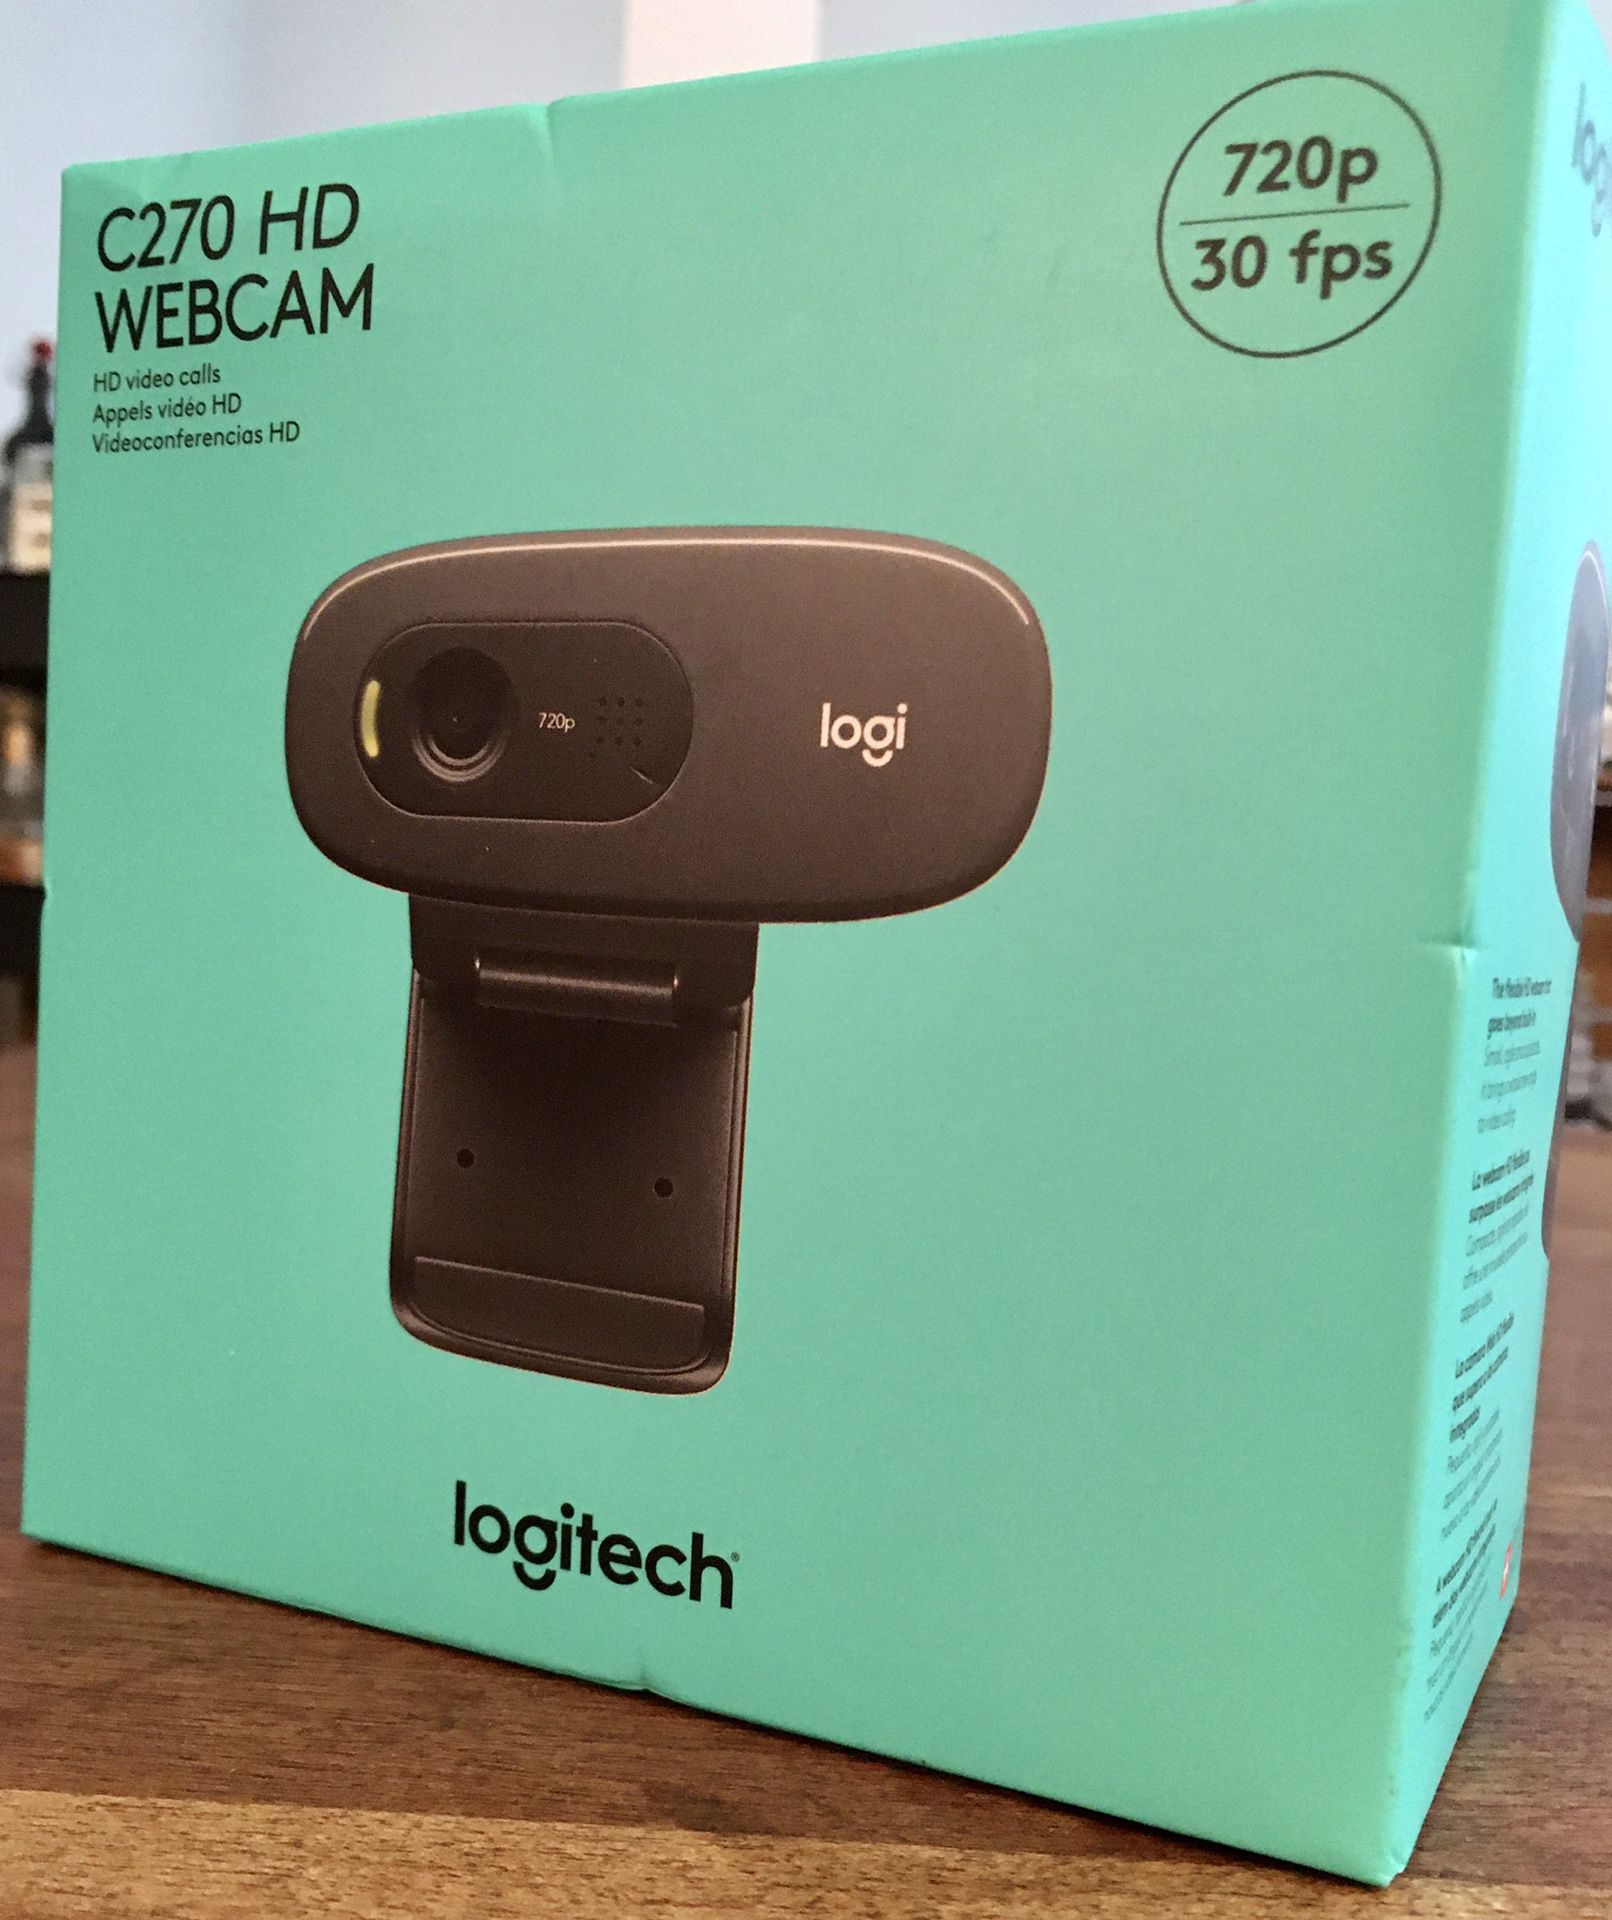 *NEW* Logitech C270 HD Webcam 720p/30 fps